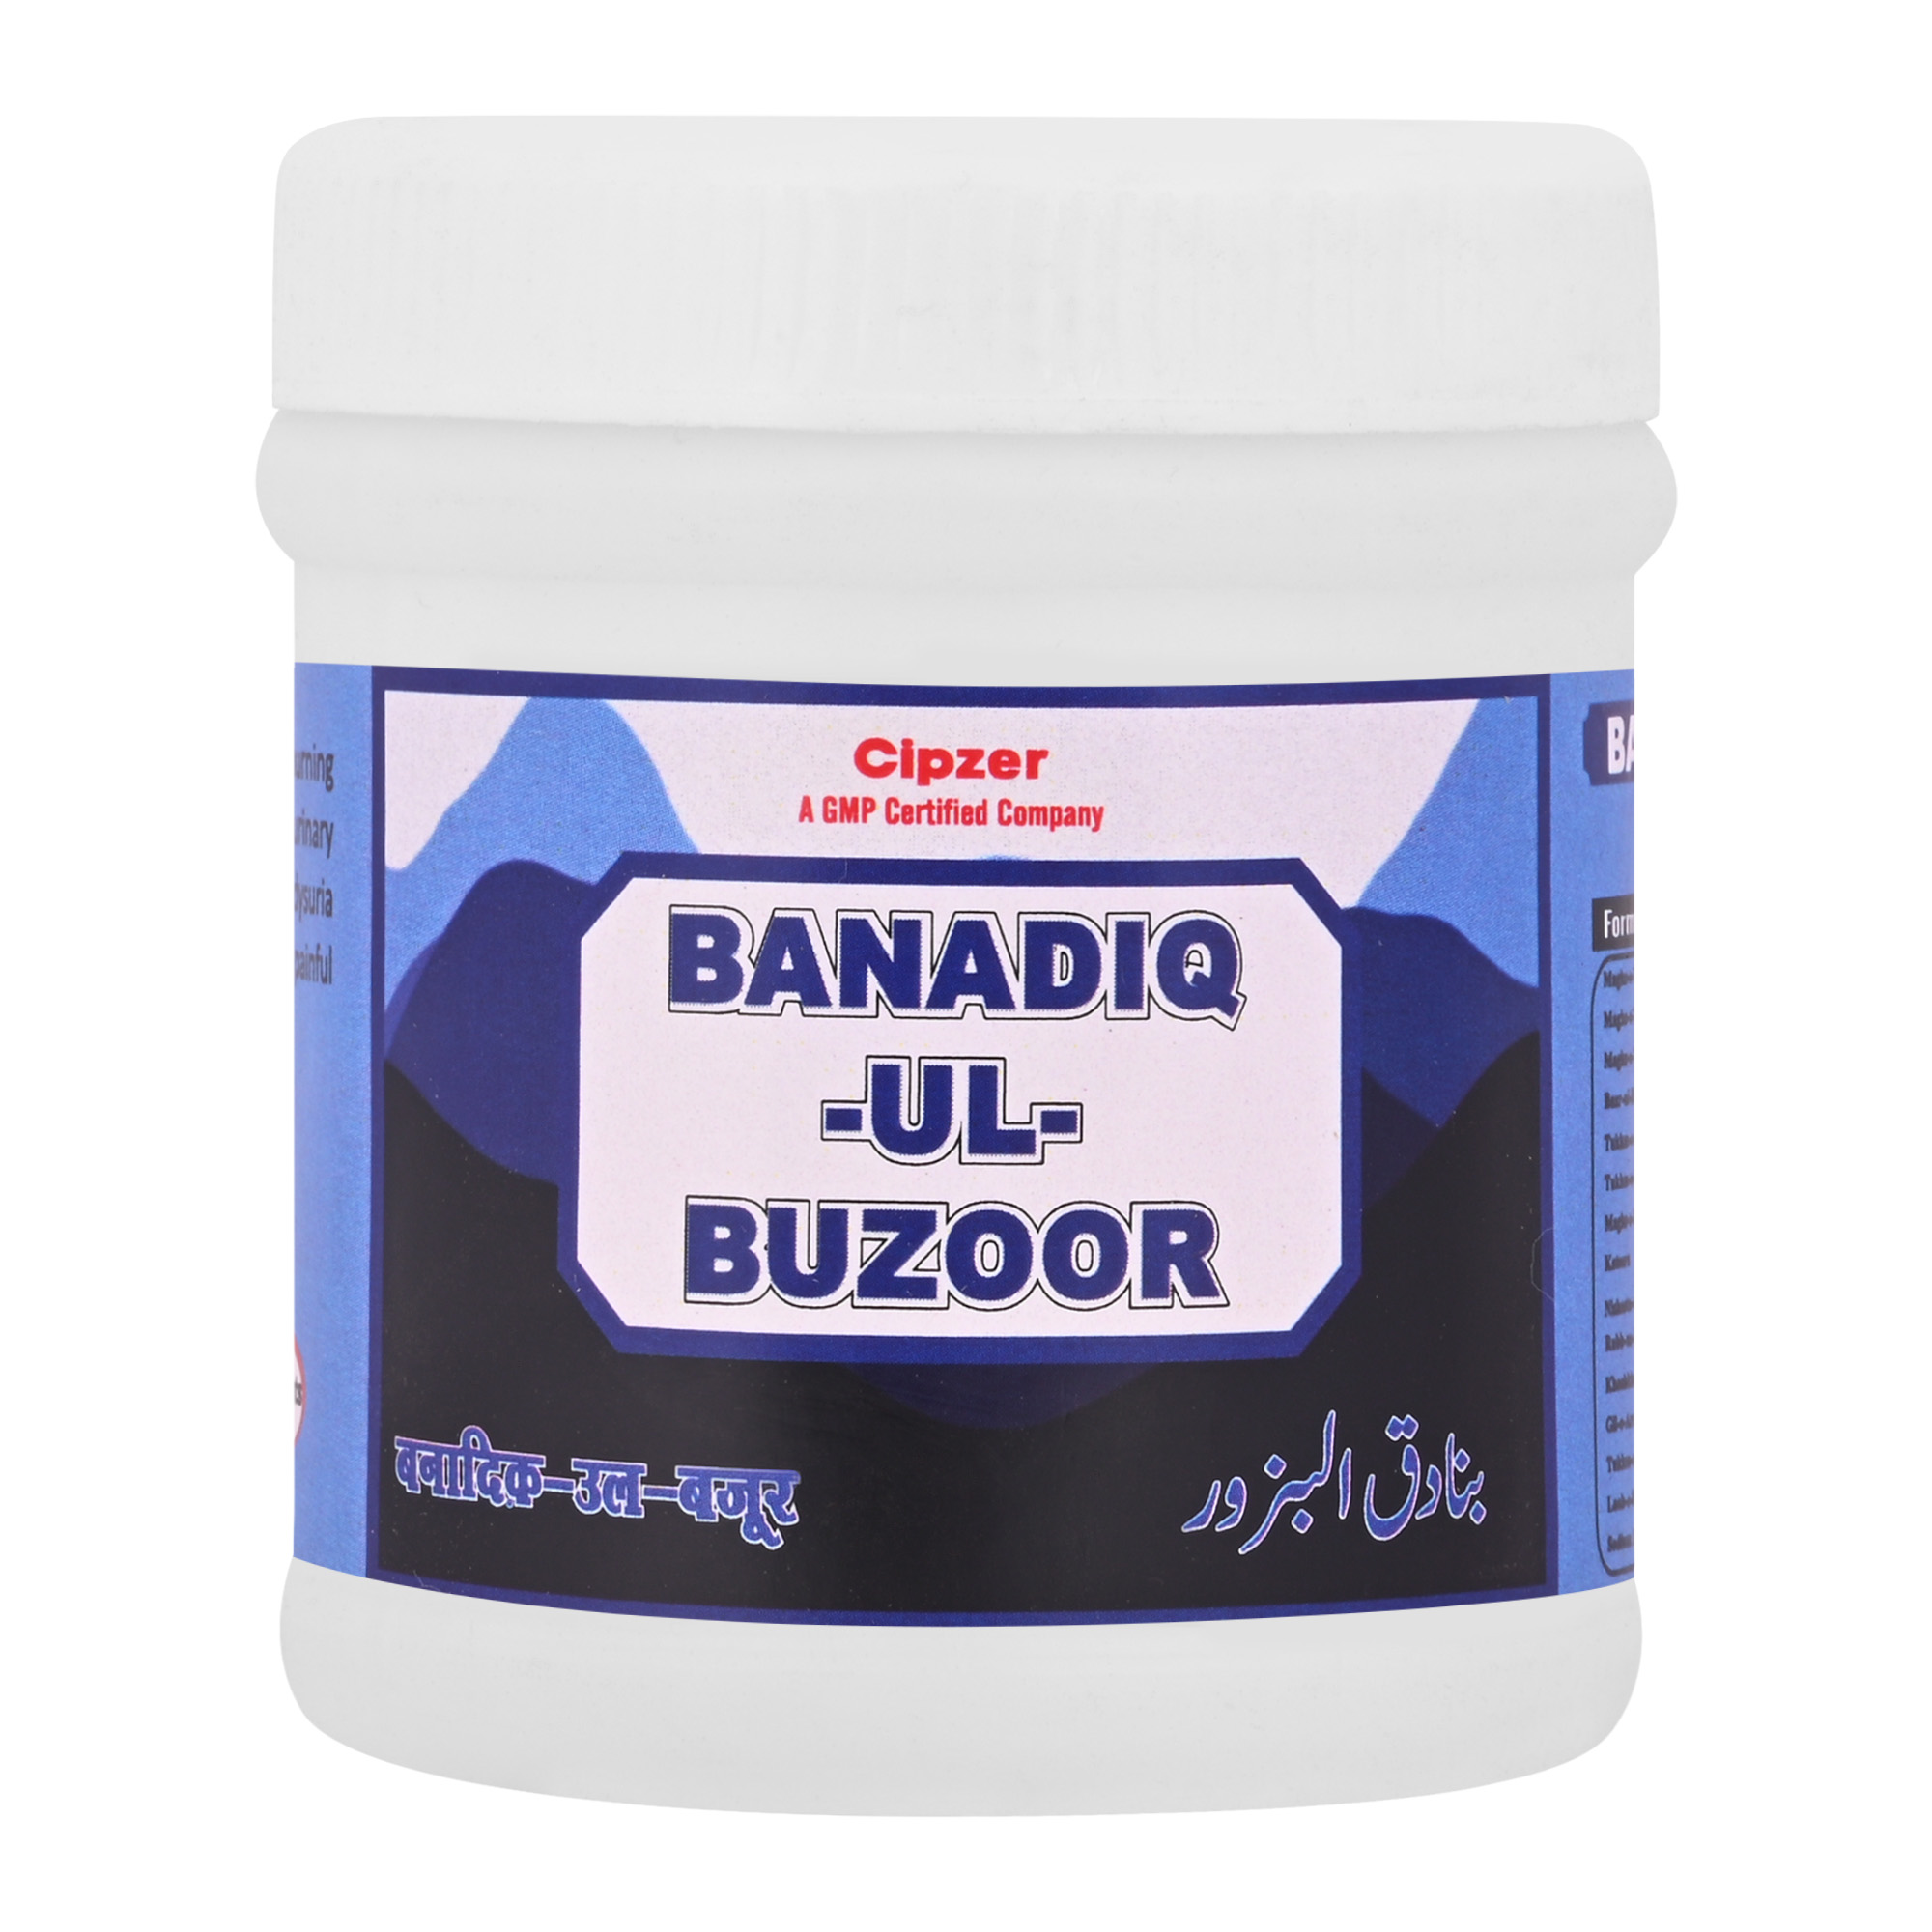 Buy Cipzer Banadiq-Ul-Buzoor at Best Price Online